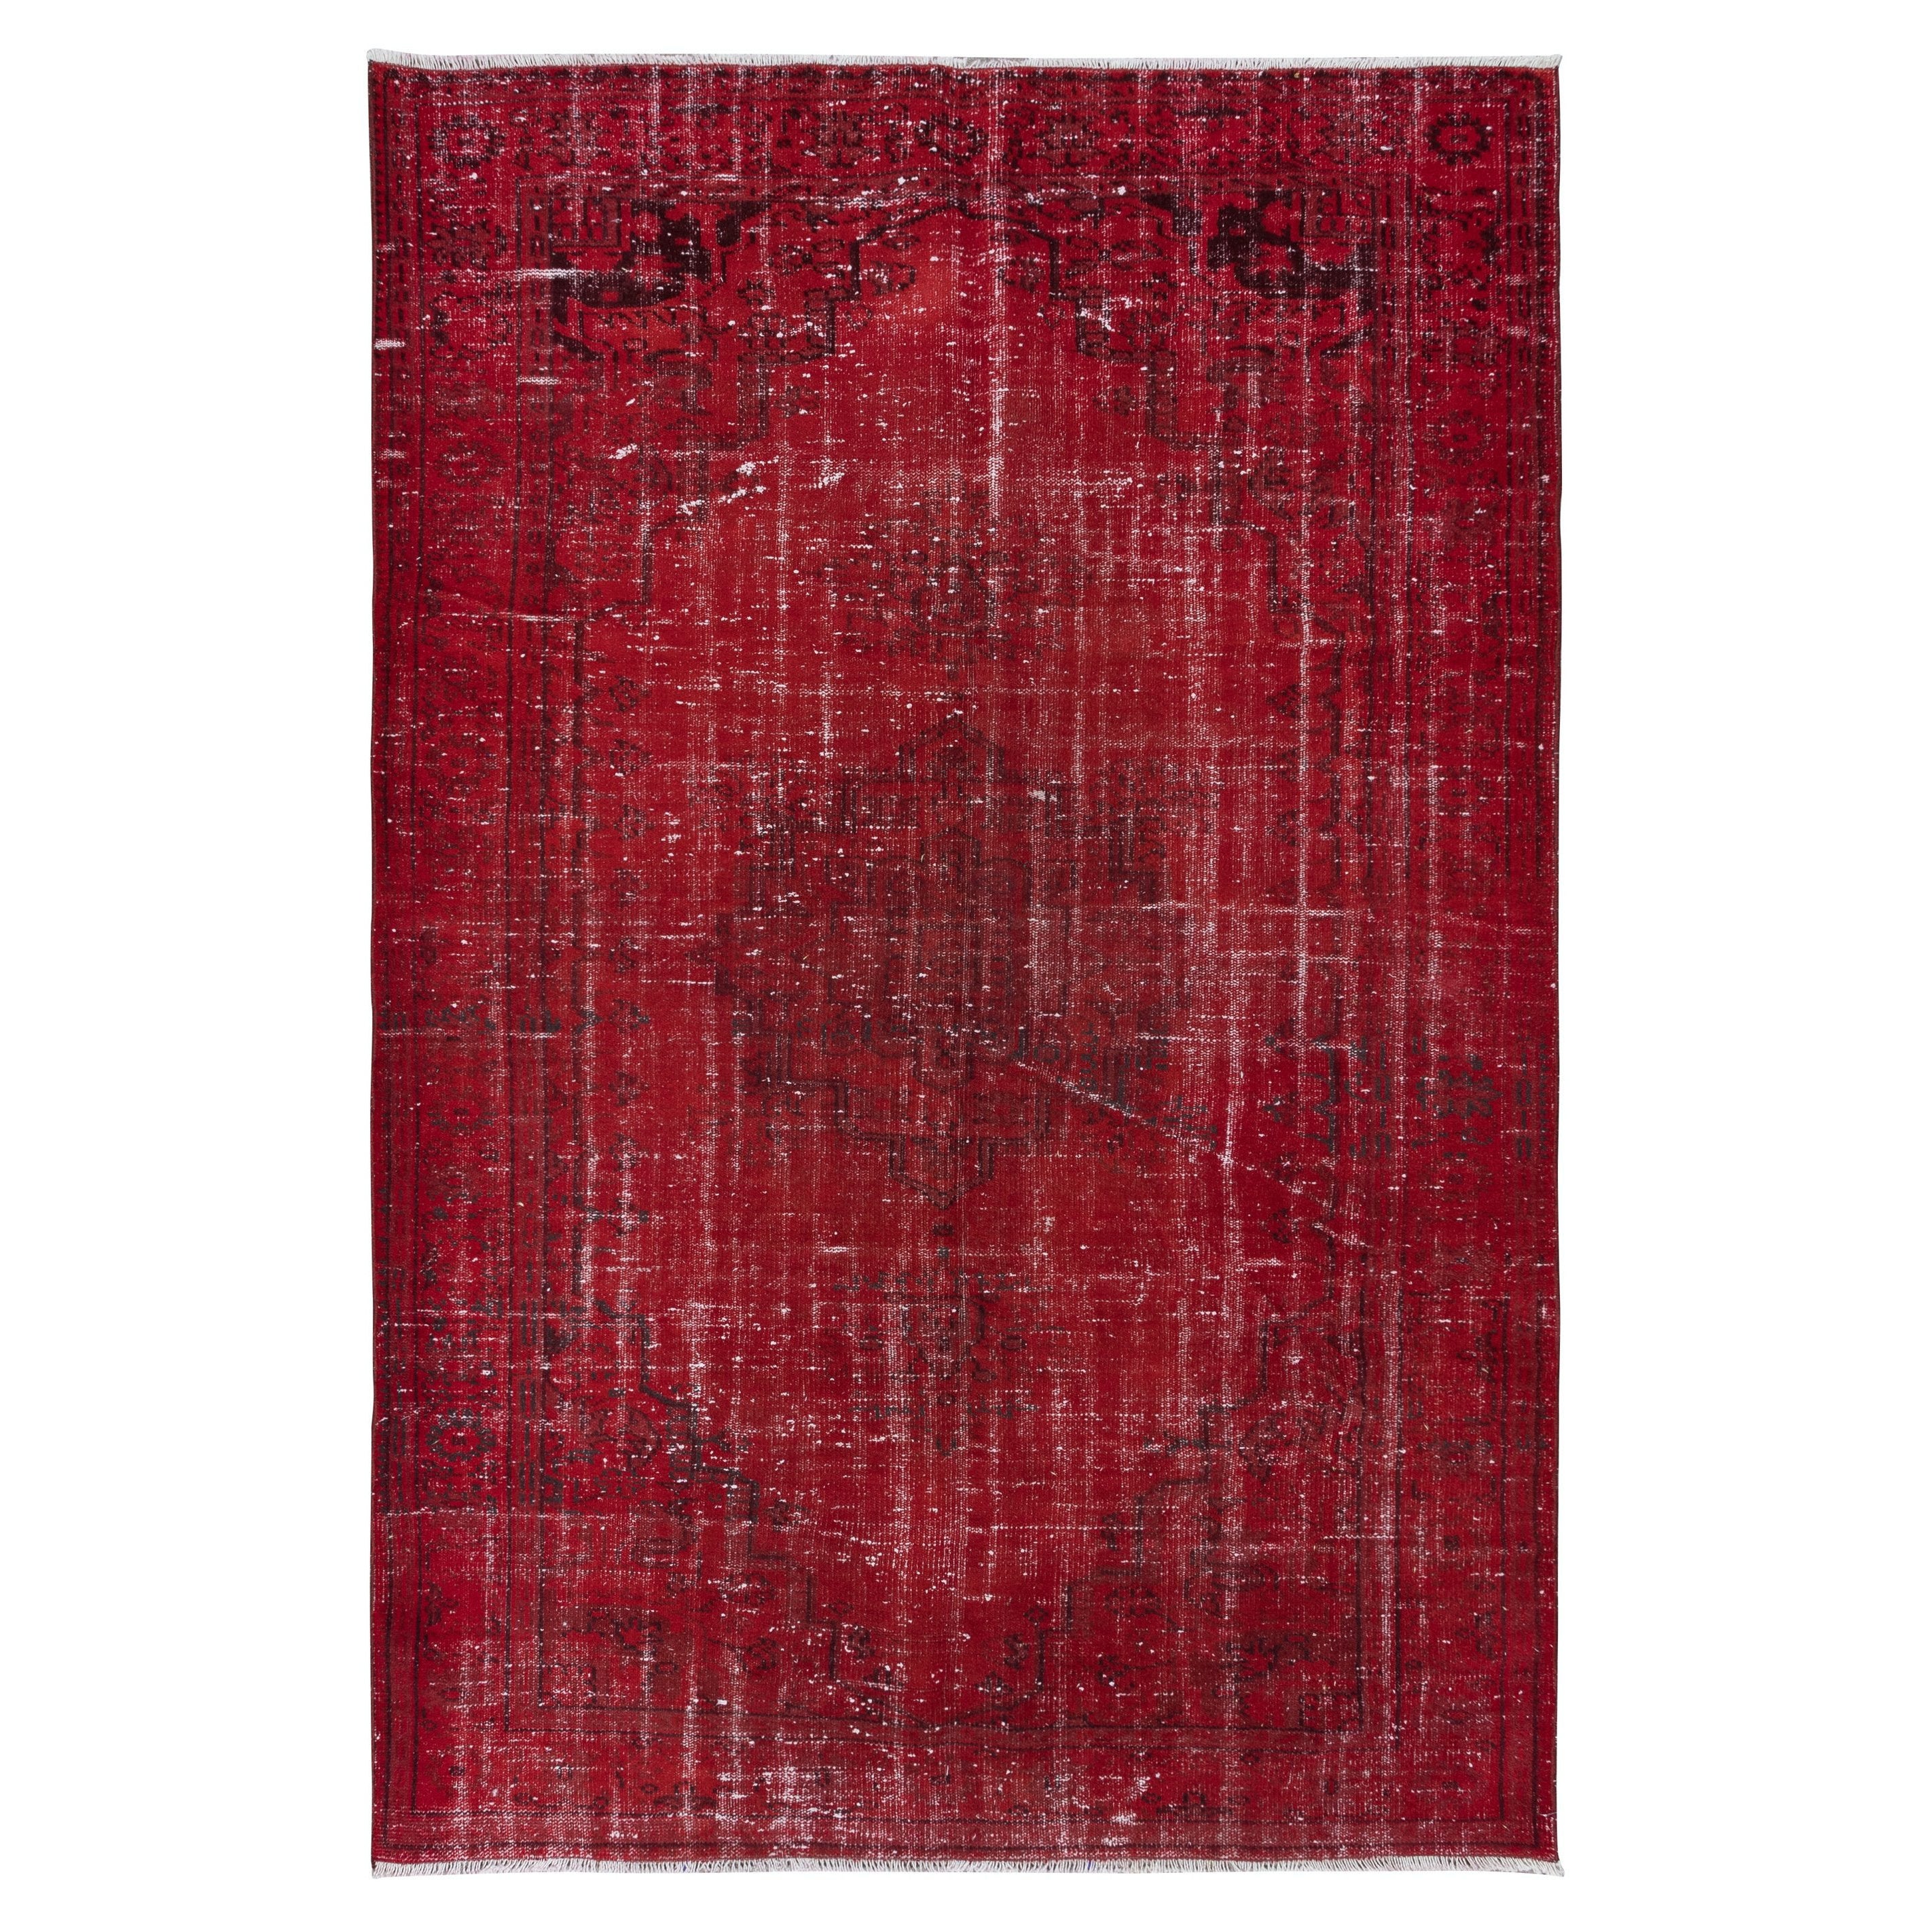 6x9 Ft Dark Red Turkish Area Rug for Living Room, Modern Handmade Carpet (tapis turc rouge foncé pour le salon, fait à la main)